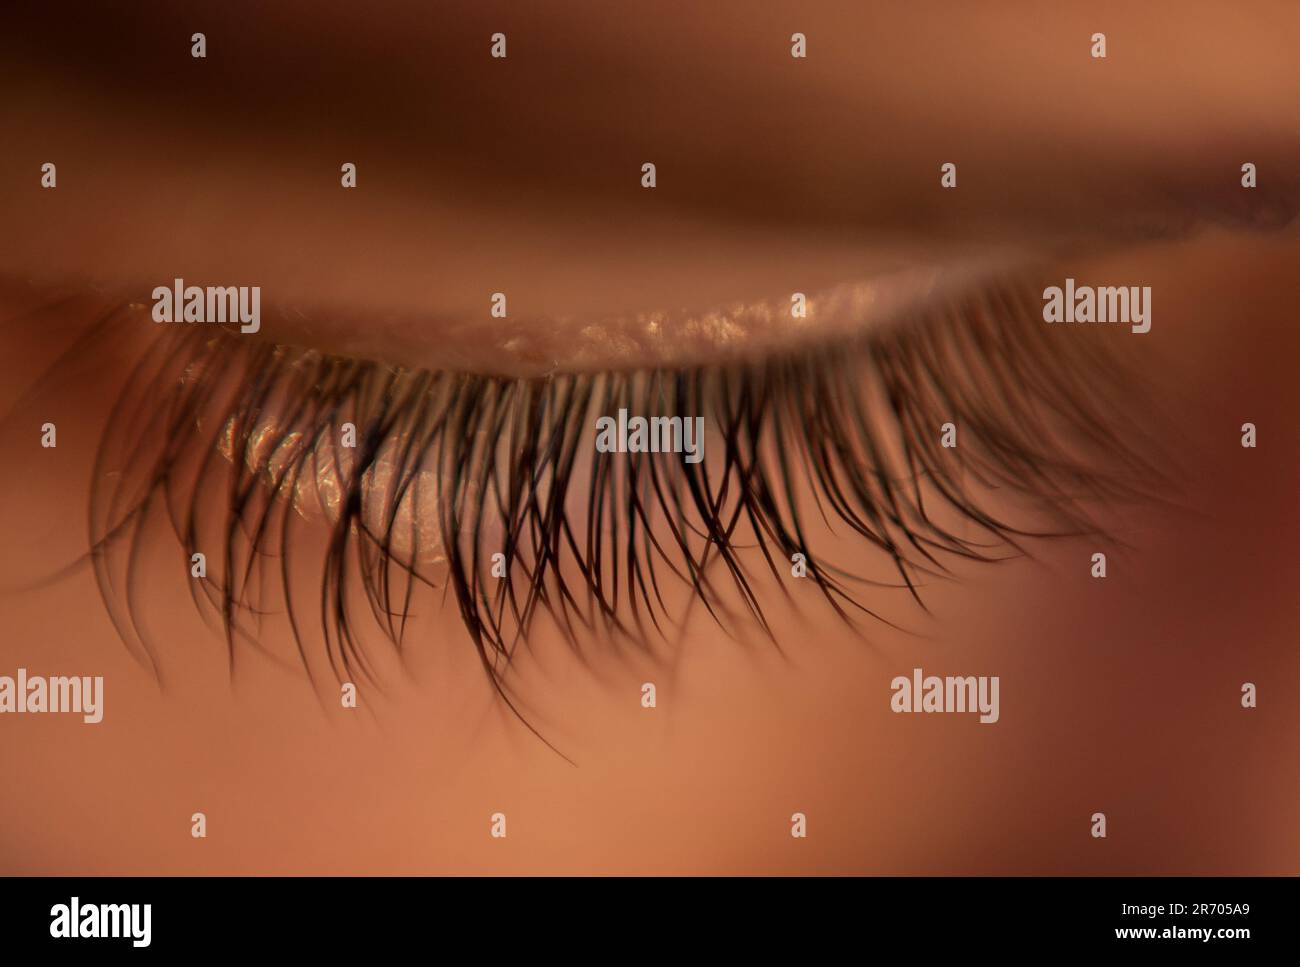 Long dark eyelashes up close Stock Photo